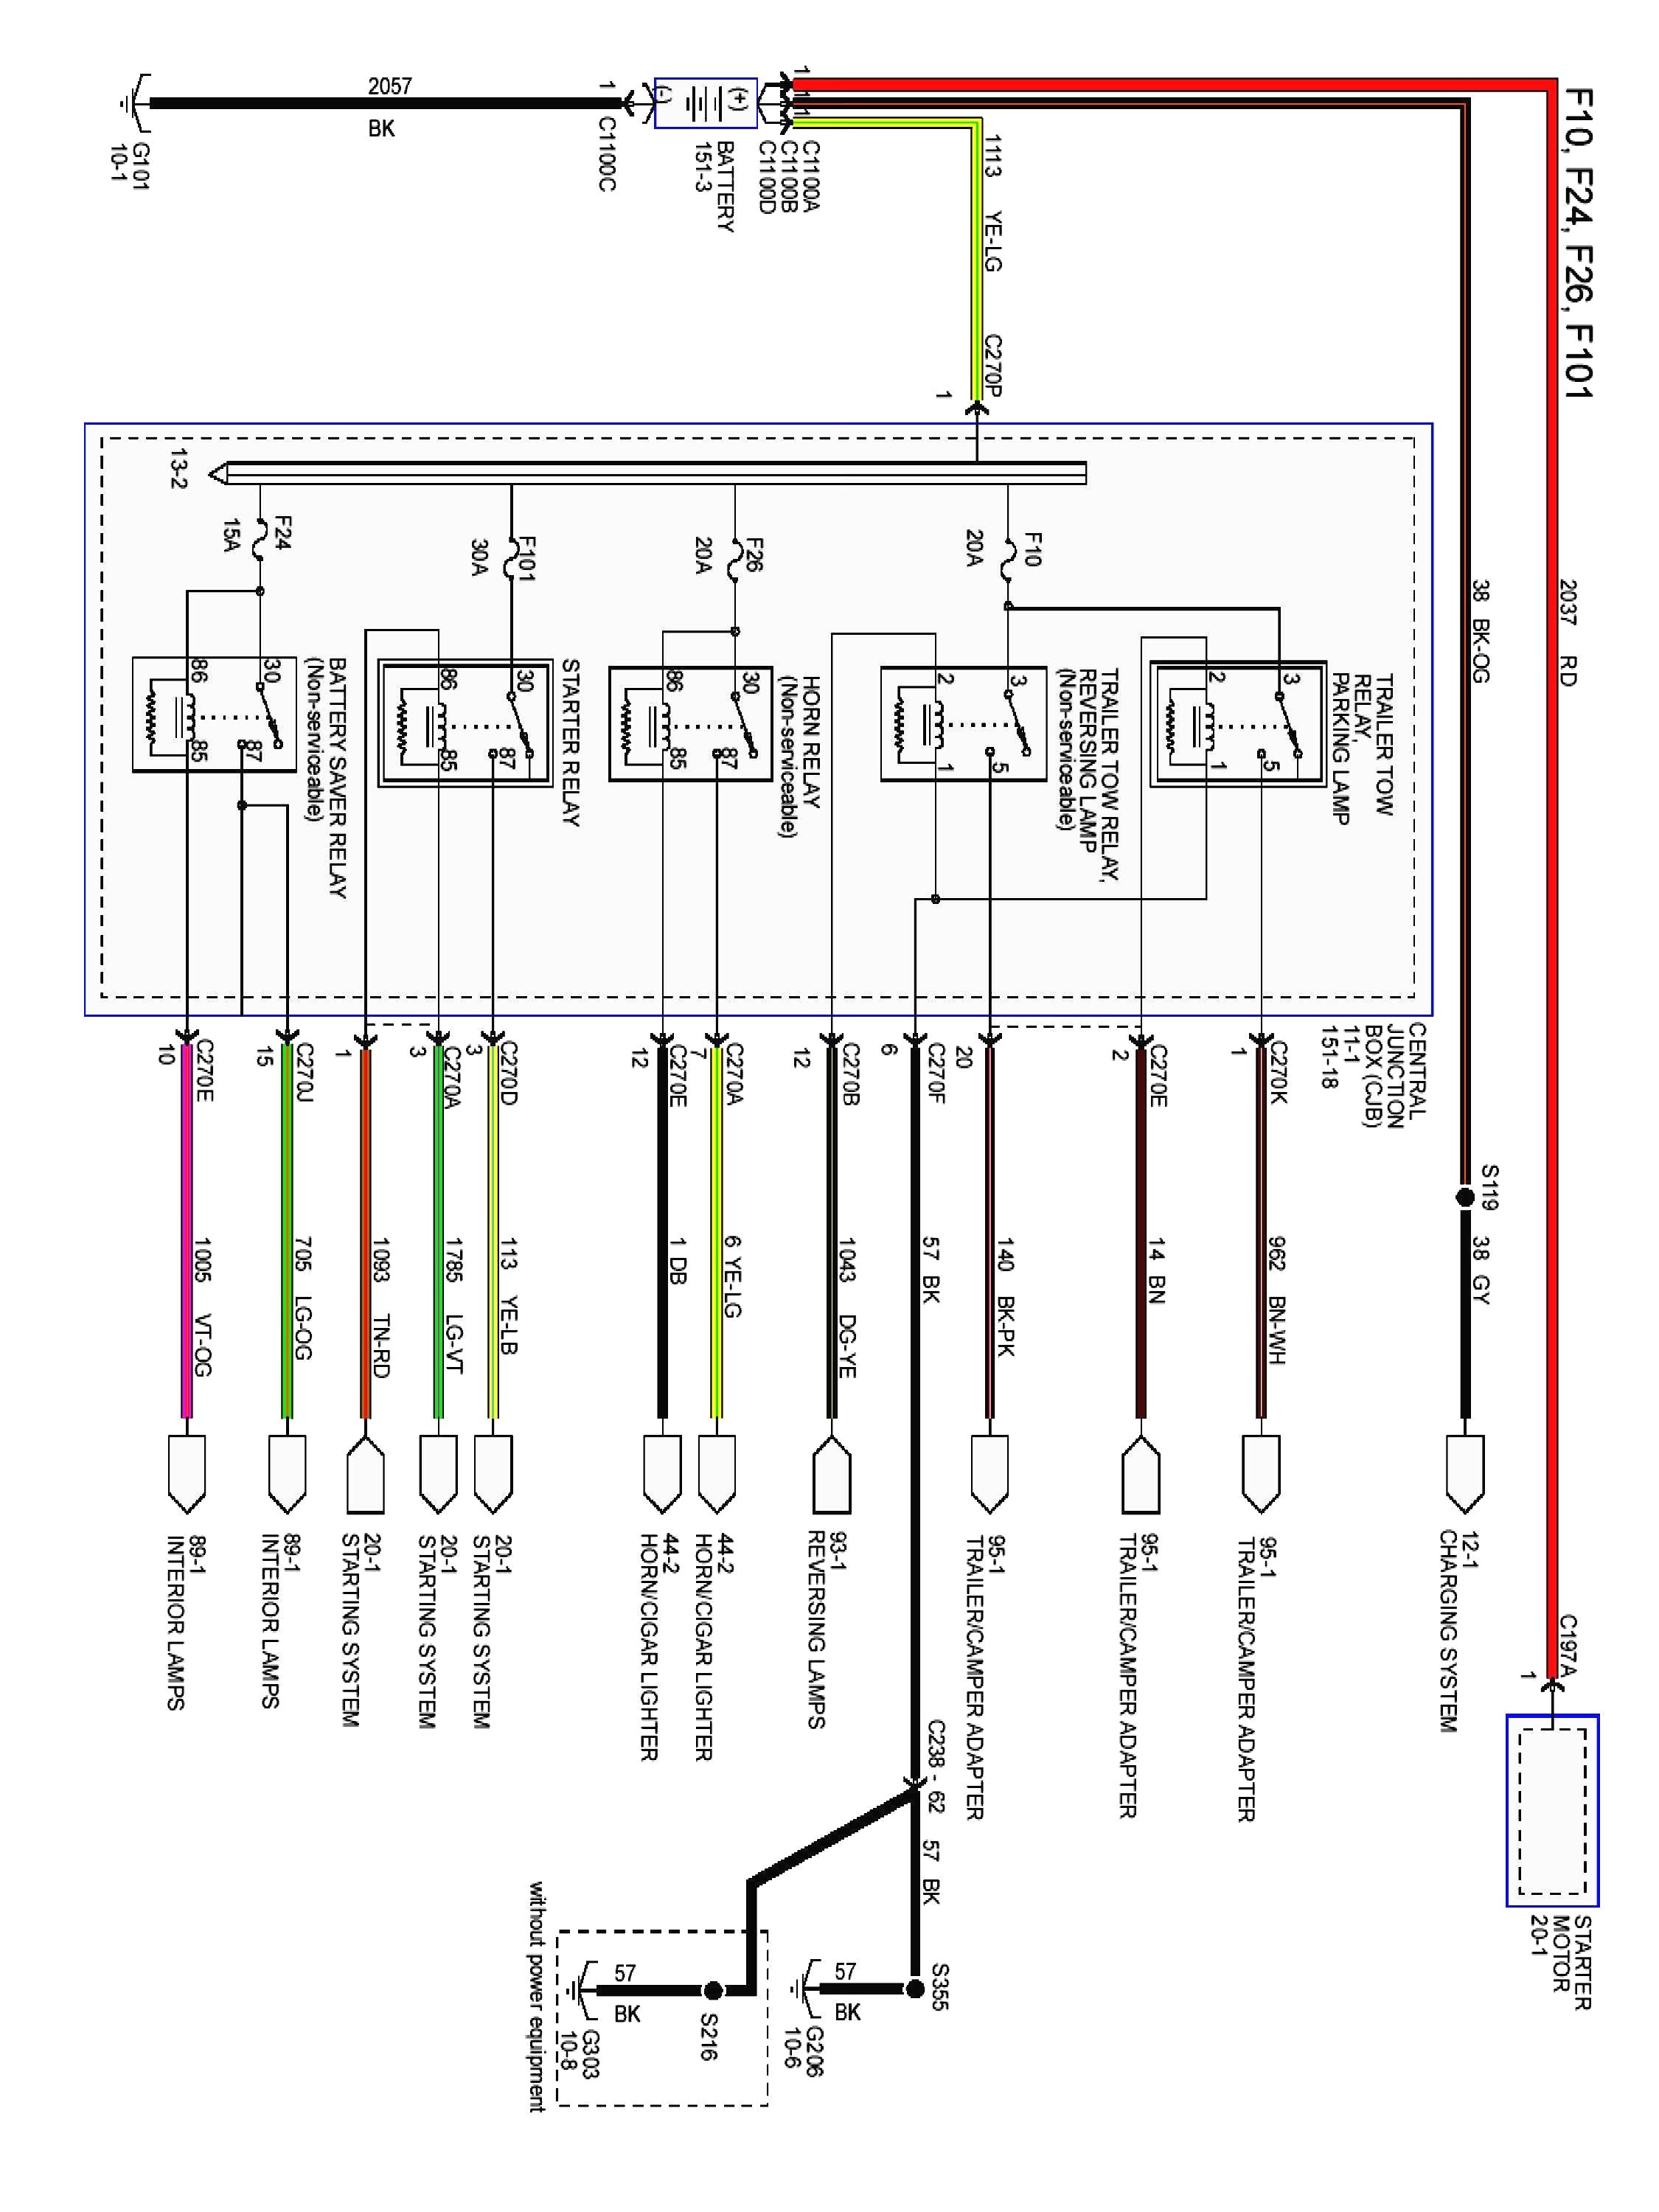 2002 taurus wiring diagram 2012 ford taurus wiring diagram wiring diagram blog of 2002 taurus wiring diagram